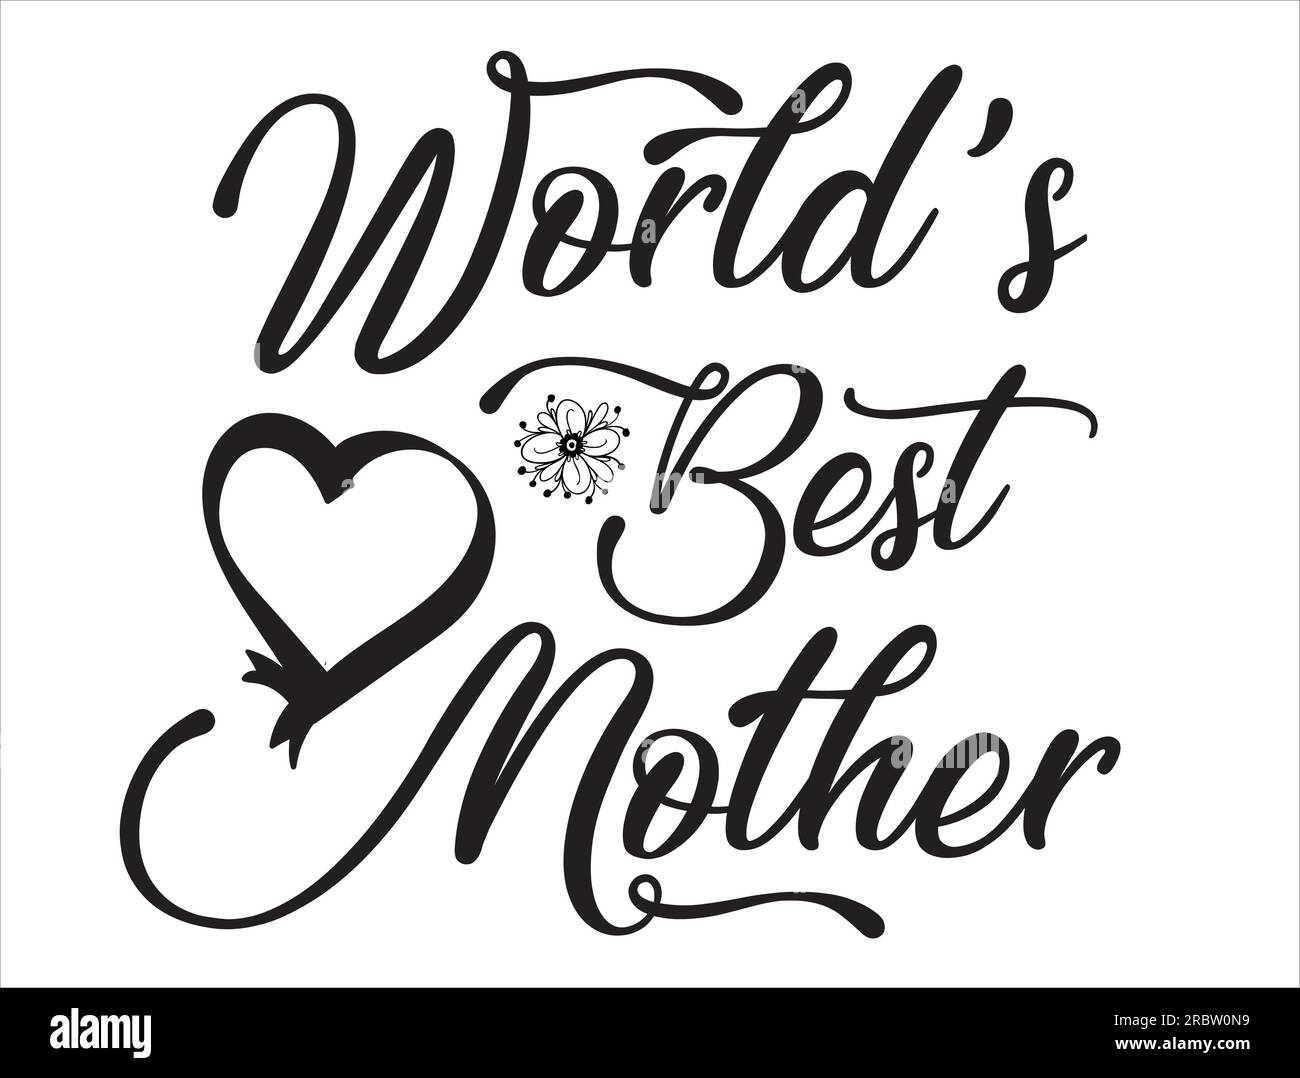 World's best mother vector design Stock Vector Image & Art - Alamy